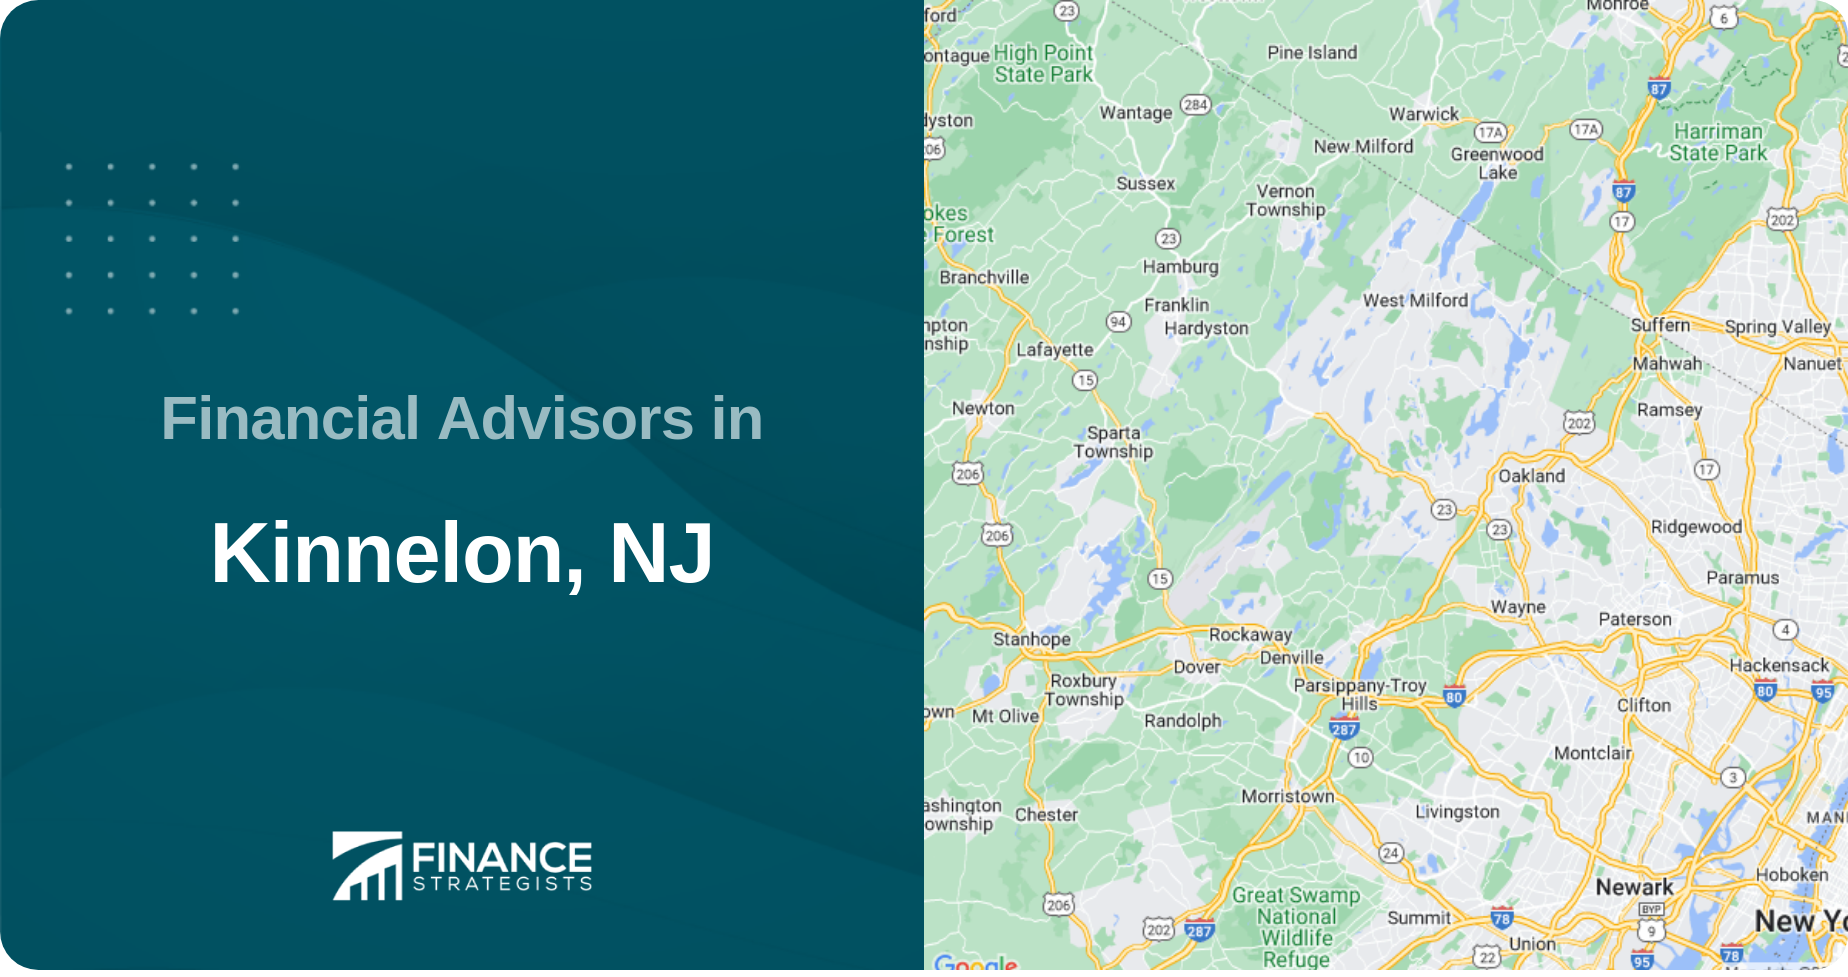 Financial Advisors in Kinnelon, NJ